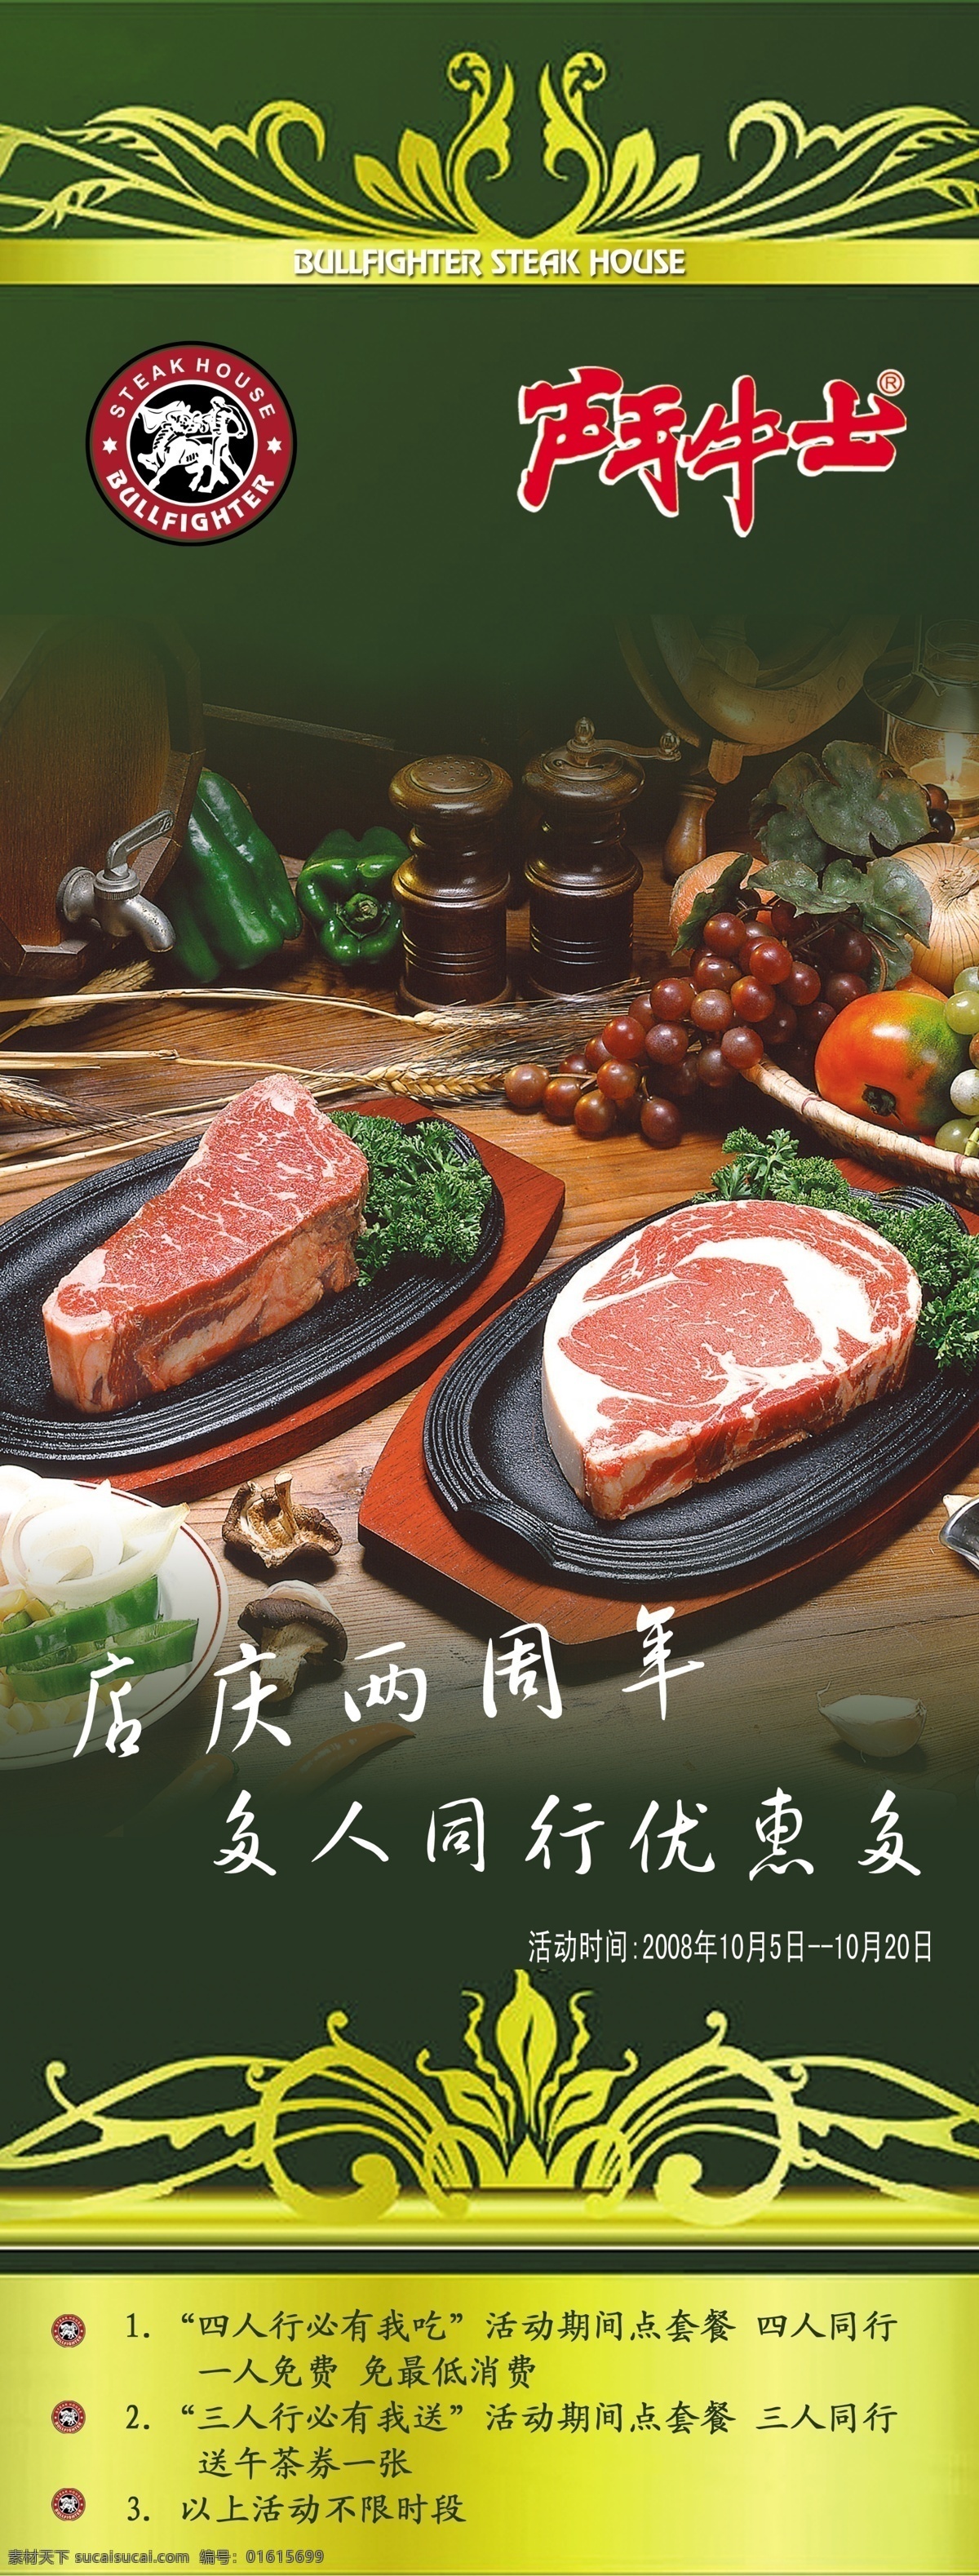 牛肉 店 美食 广告 牛肉店美食 花纹 肉食 食物 展板模板